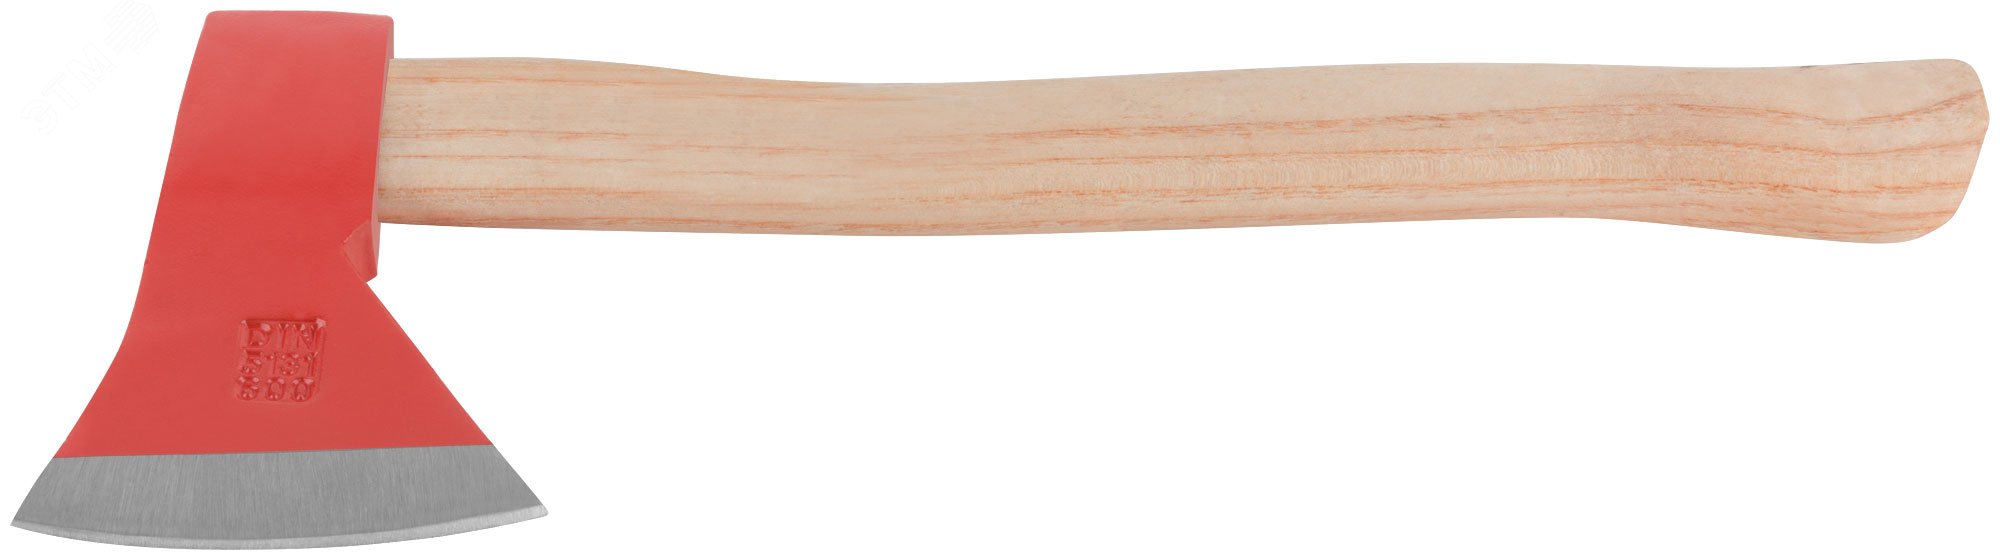 Топор кованая усиленная сталь, деревянная ручка 600 гр 46006 FIT - превью 5